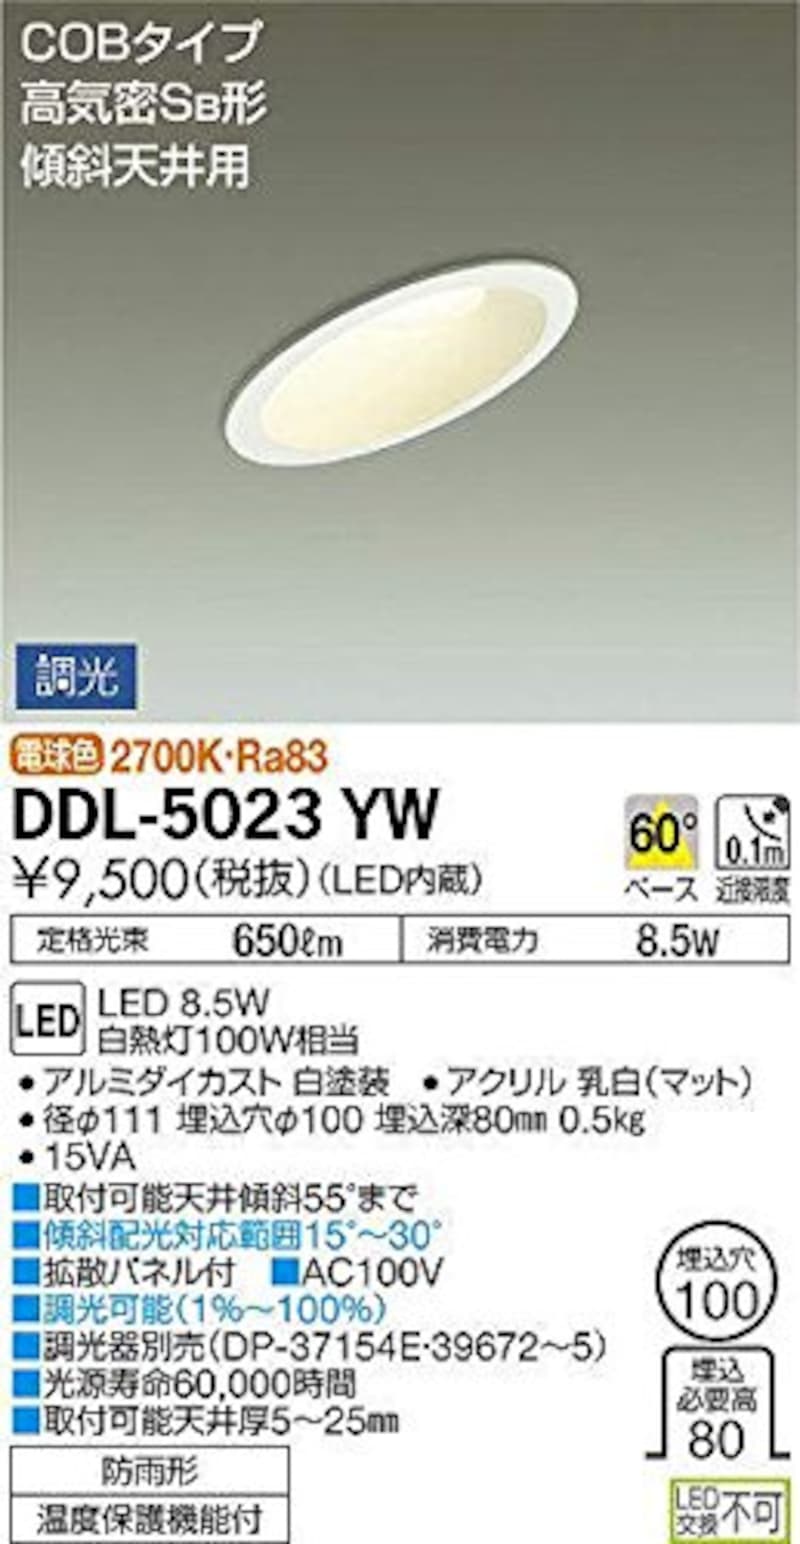 大光電機,LEDダウンライト,DDL-5023YW